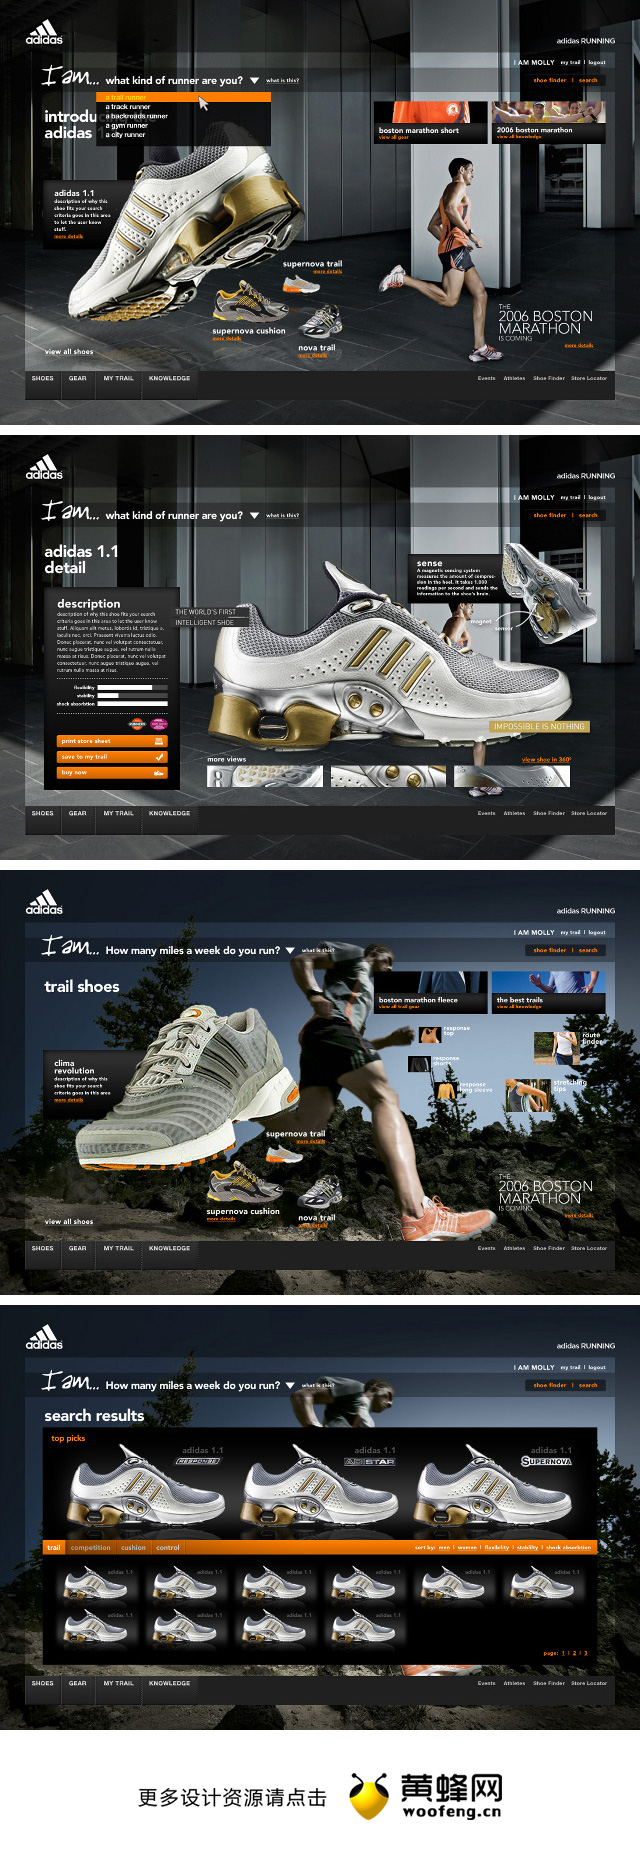 阿迪达斯运动鞋网页设计，来自黄蜂网https://woofeng.cn/